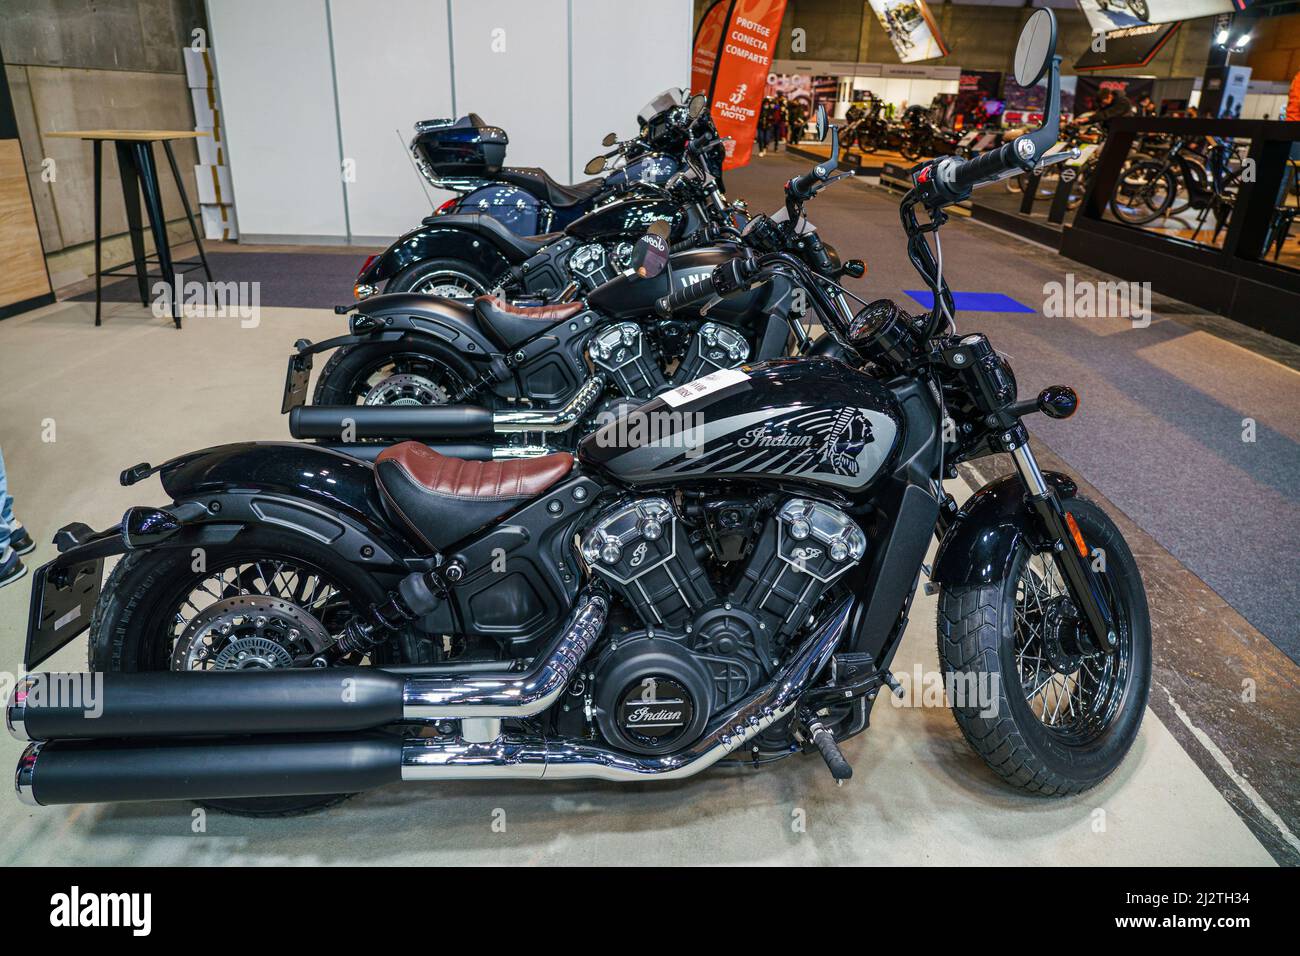 Motorcycle T Shirt Harley Davidson BMW Garage Biker Motorbike Indian Motor